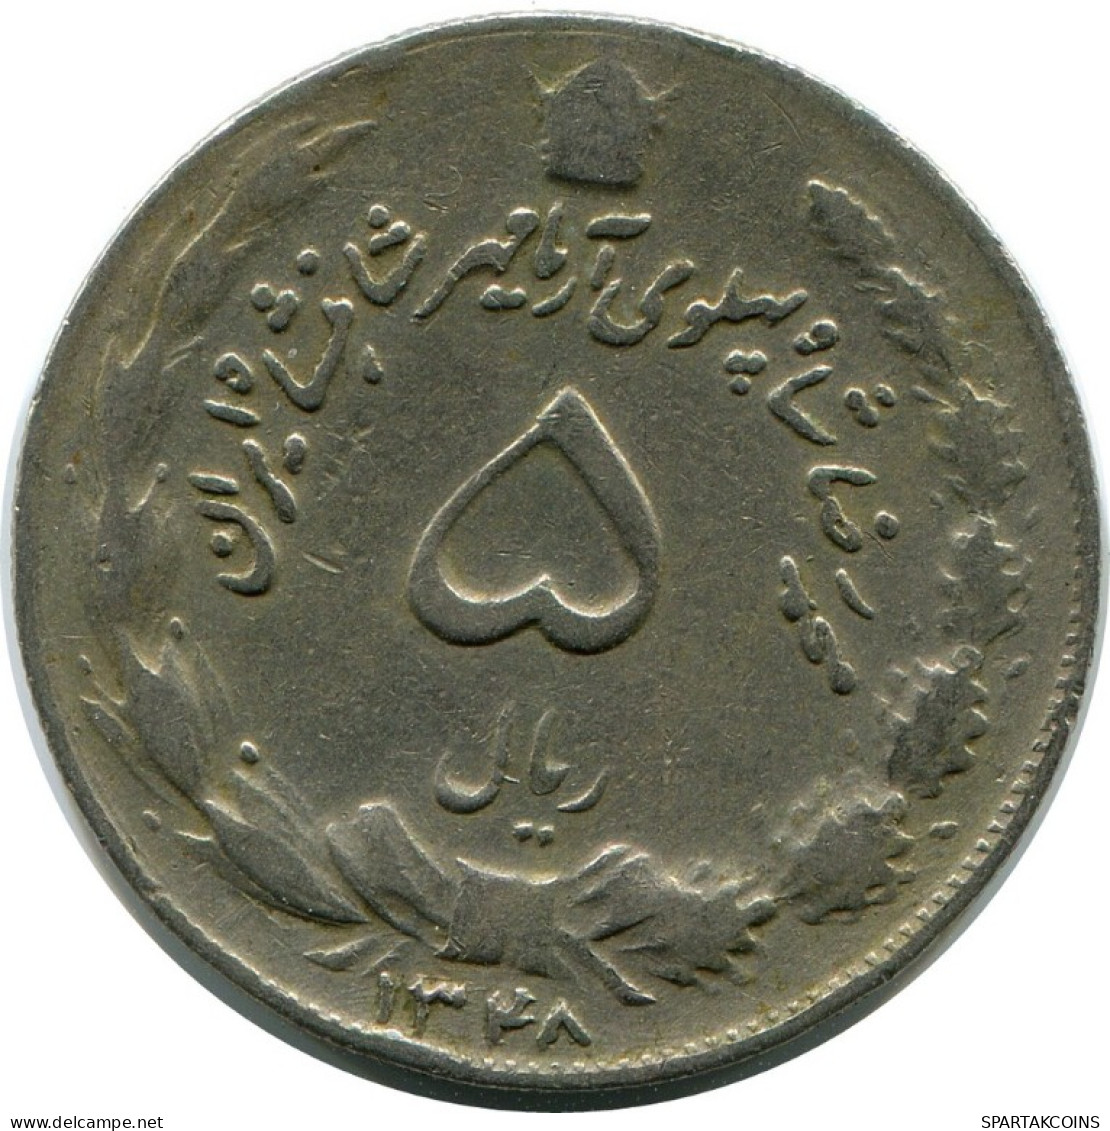 IRAN 5 RIALS 1976 ISLAMIC COIN #AK066.U.A - Irán